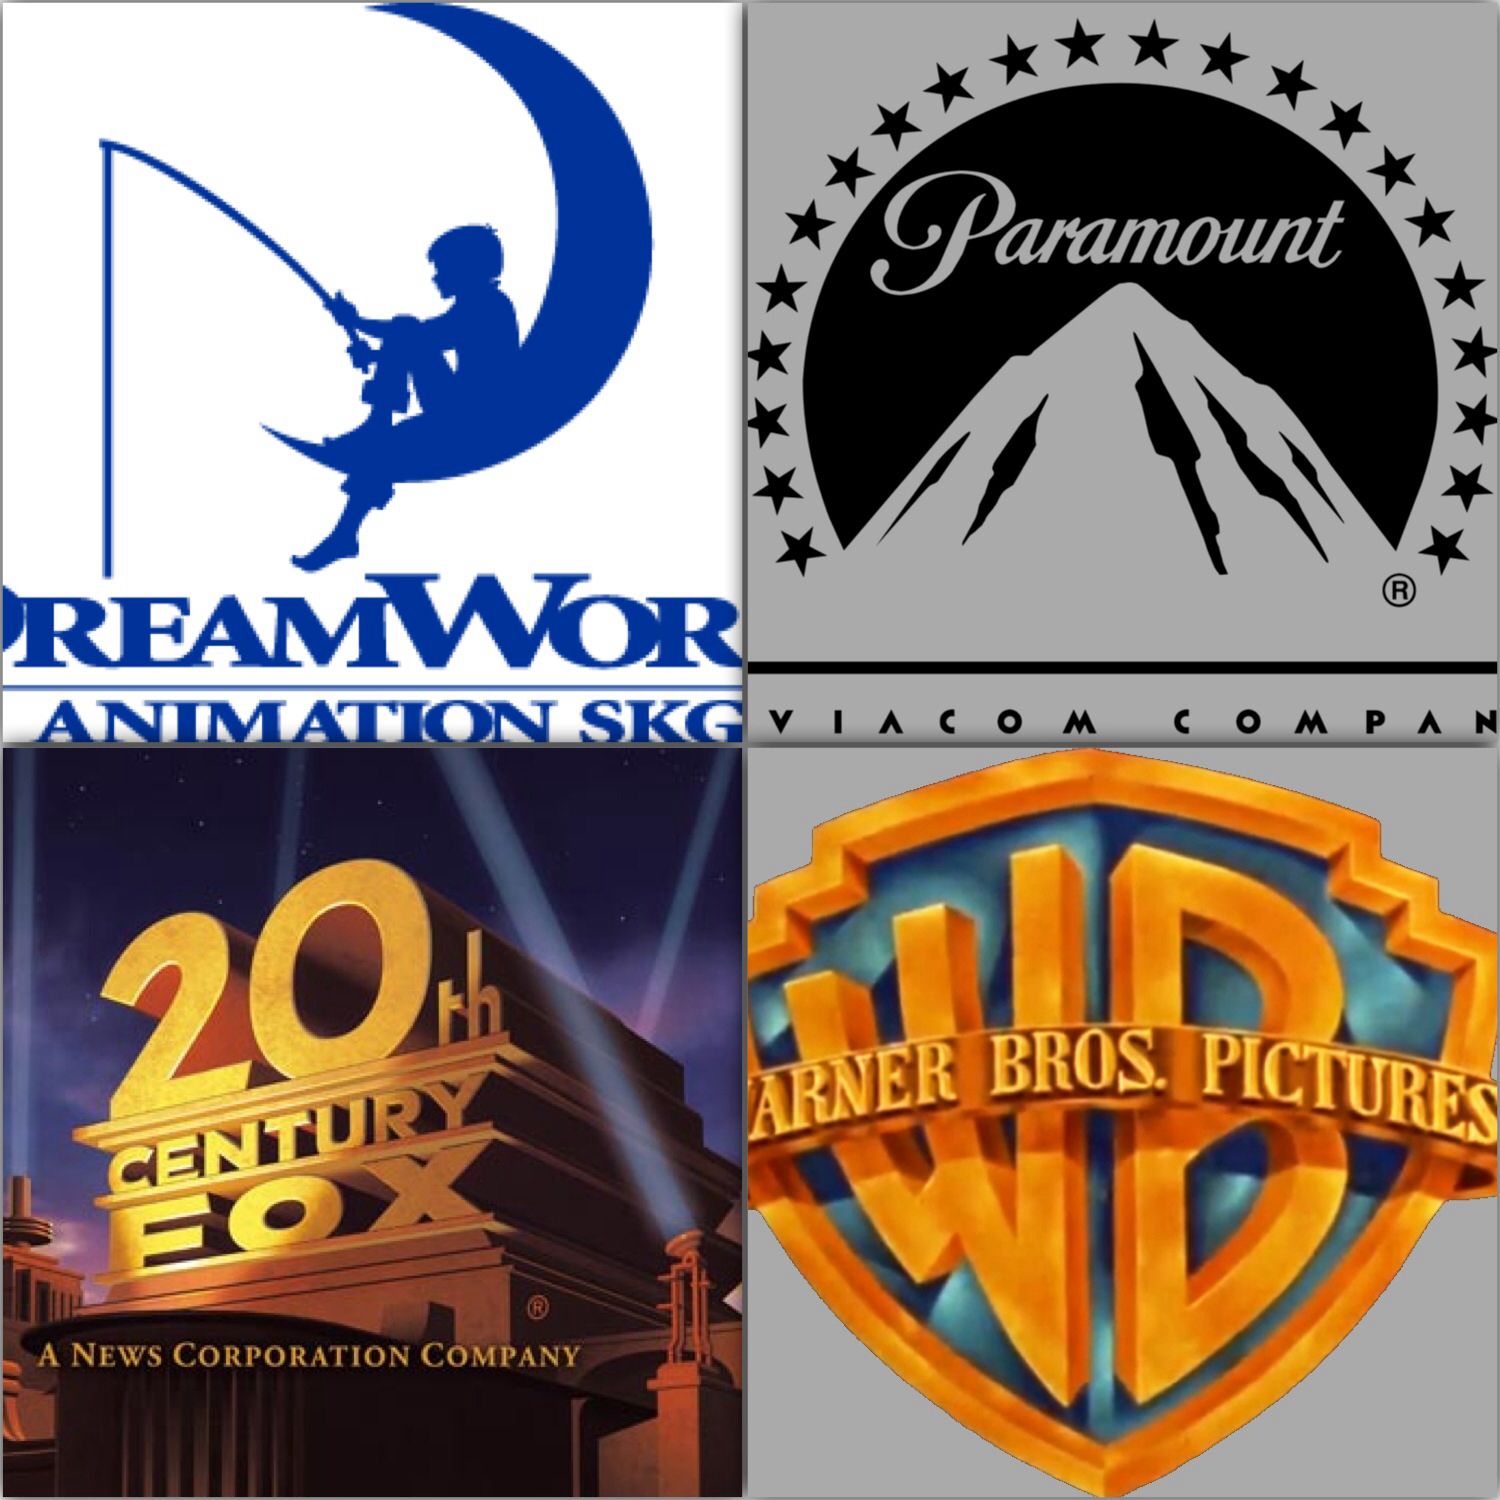 Film company logos